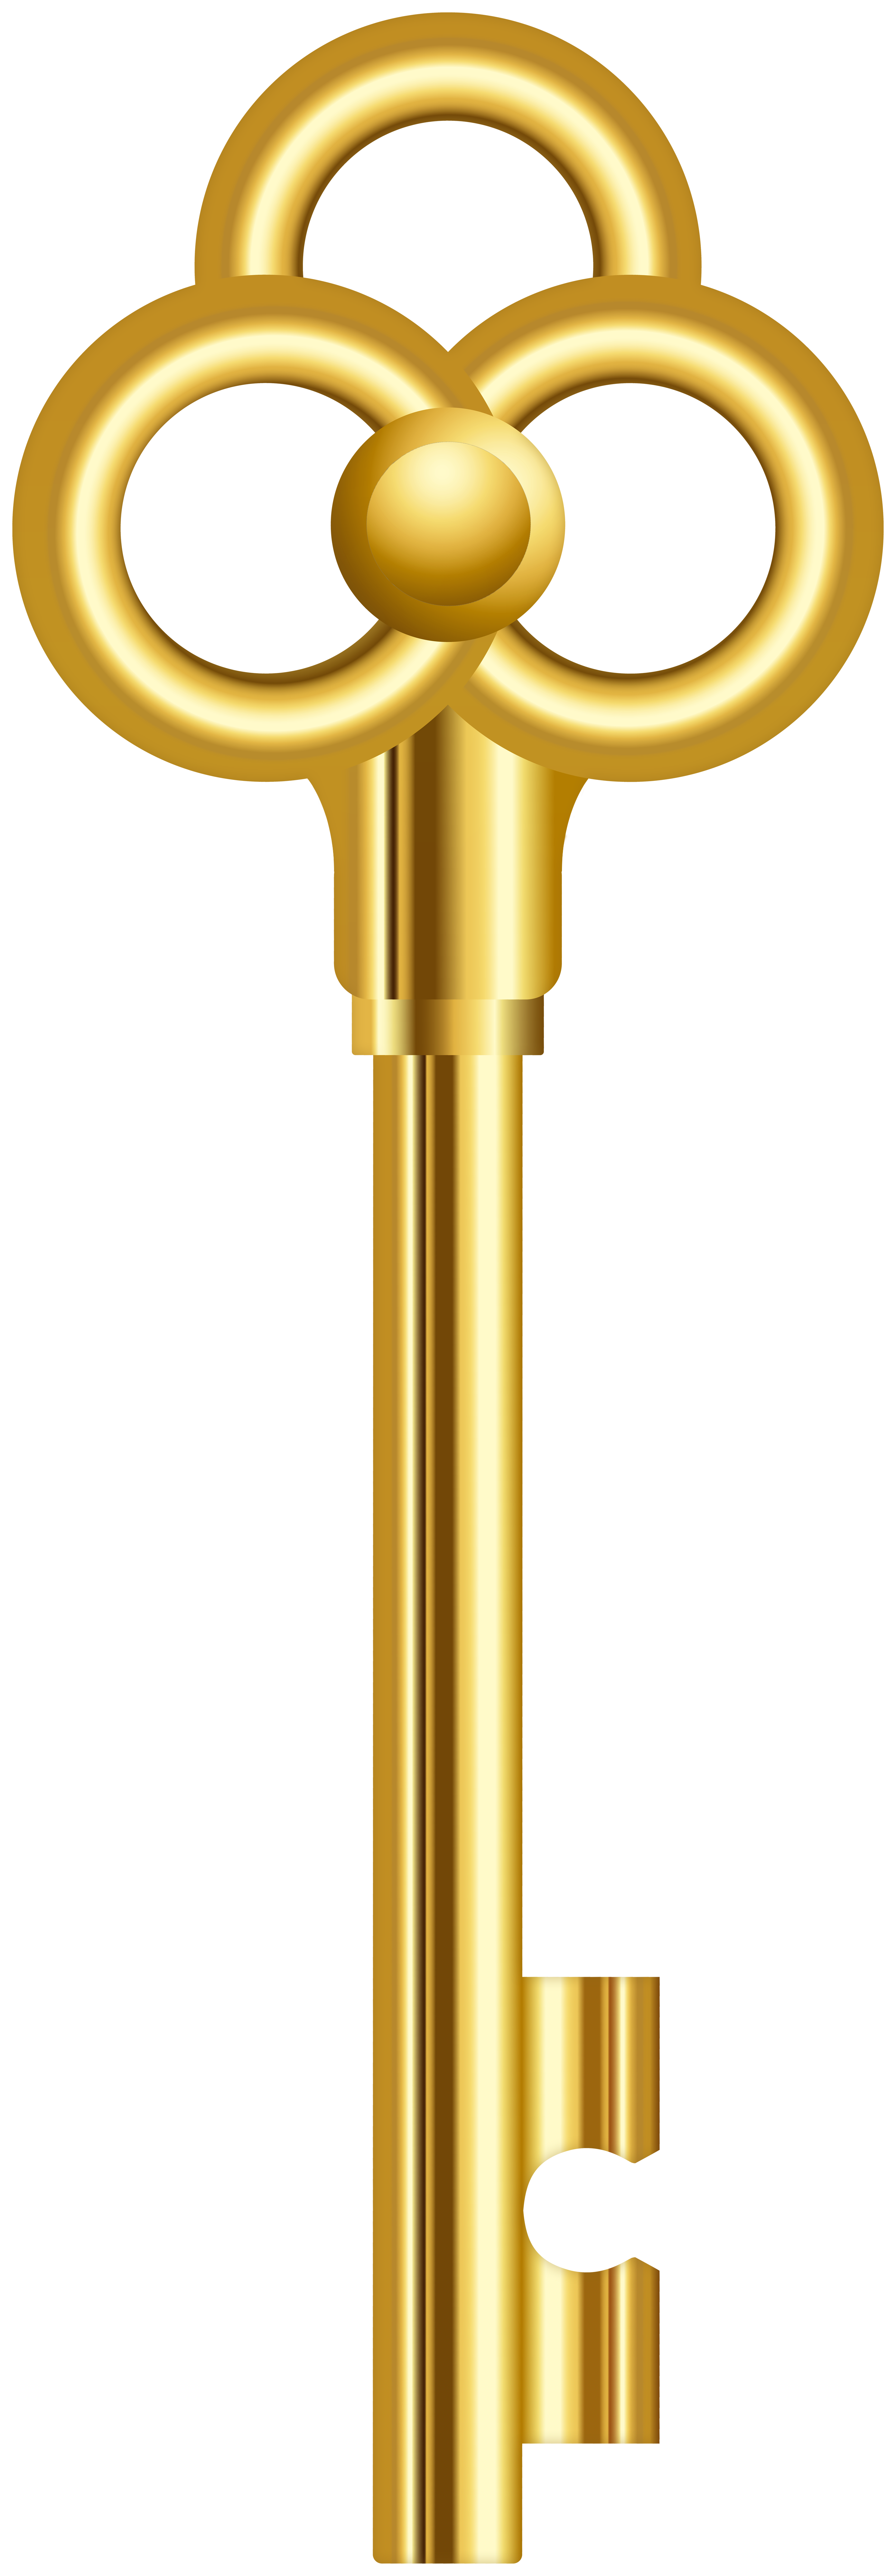 Nếu bạn yêu thích sự cổ điển và sang trọng thì không thể bỏ qua chiếc chìa khóa vàng cổ này. Điểm nhấn cho bất kỳ thiết kế nào, chiếc chìa khóa vàng mang đến sự độc đáo và quý phái.